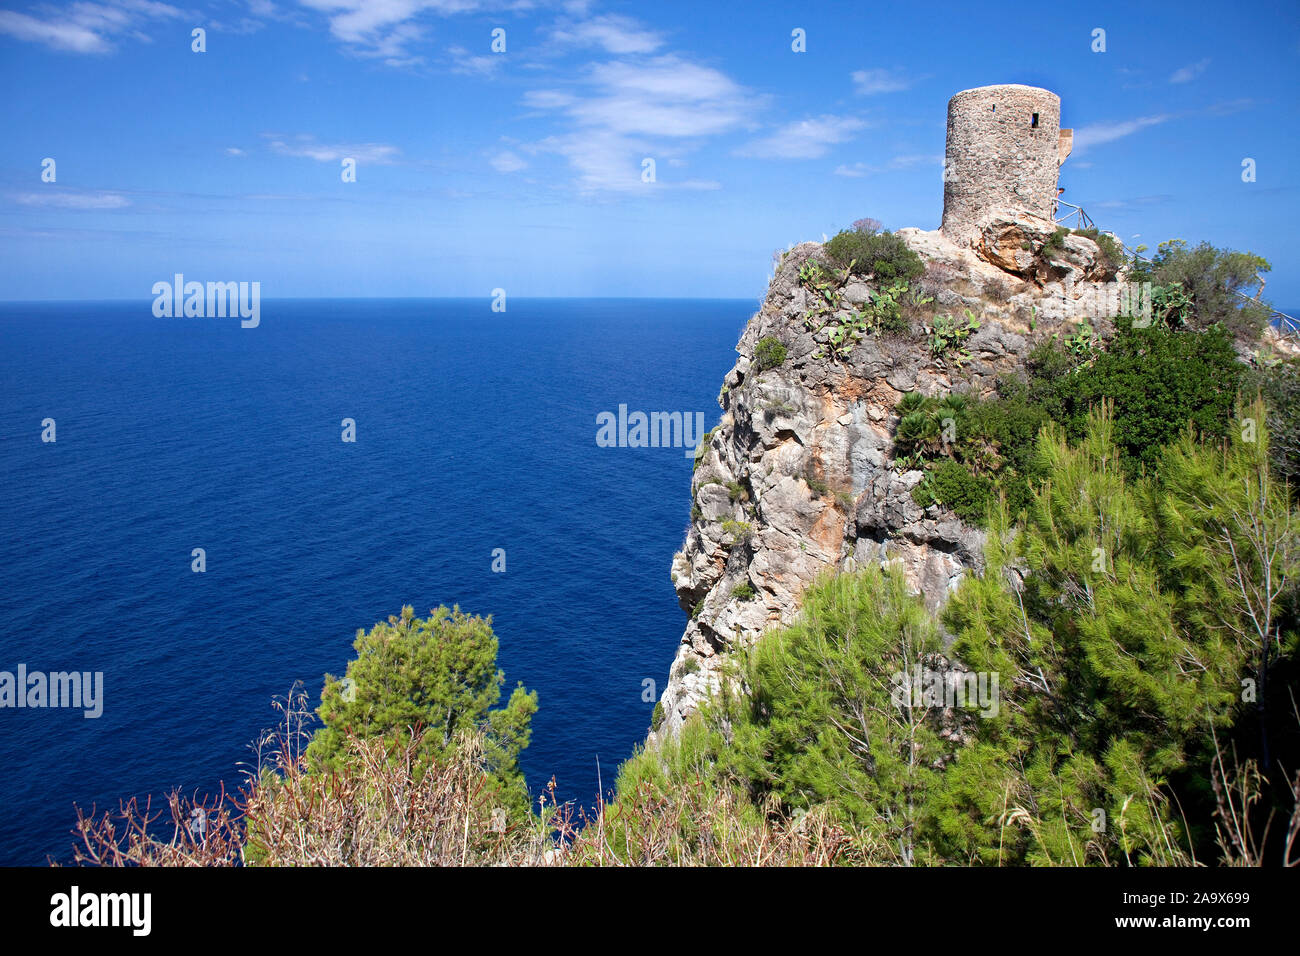 Torre de ses dessins animés, tour historique à la côte escarpée de Banyalbufar, Mallorca, Balerearic, Espagne. Banque D'Images